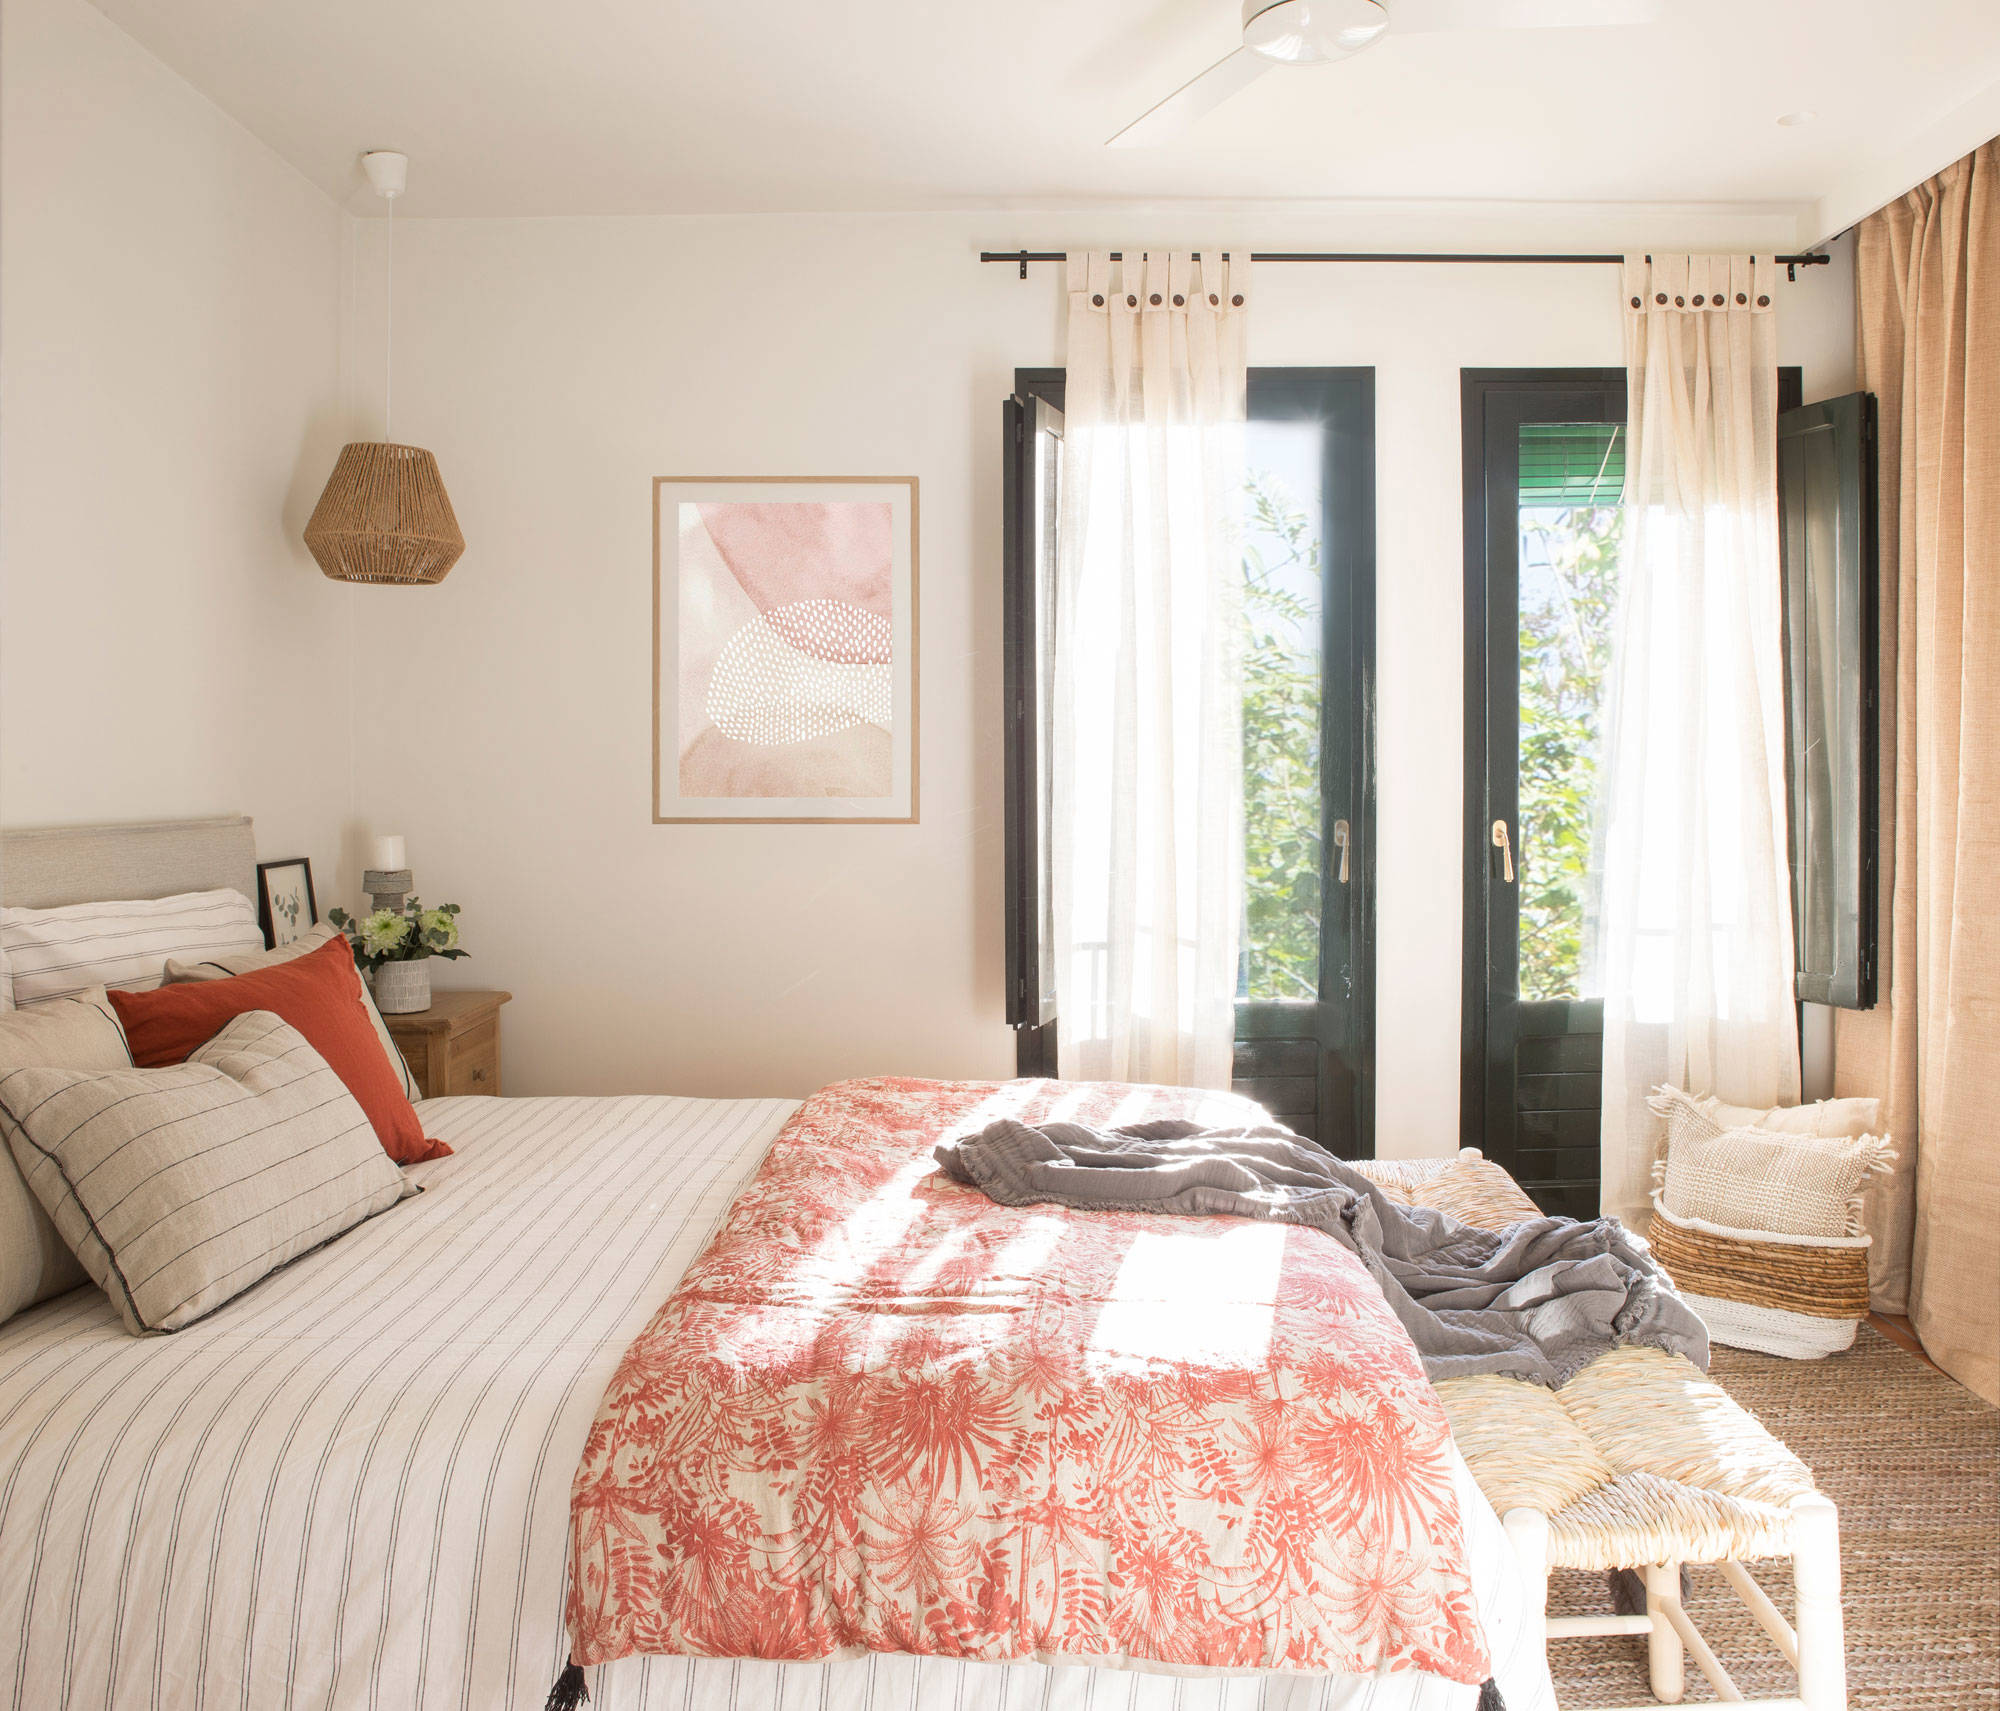 Dormitorio diseñado por Eva Mesa en tonos neutros y pinceladas de color rosa.